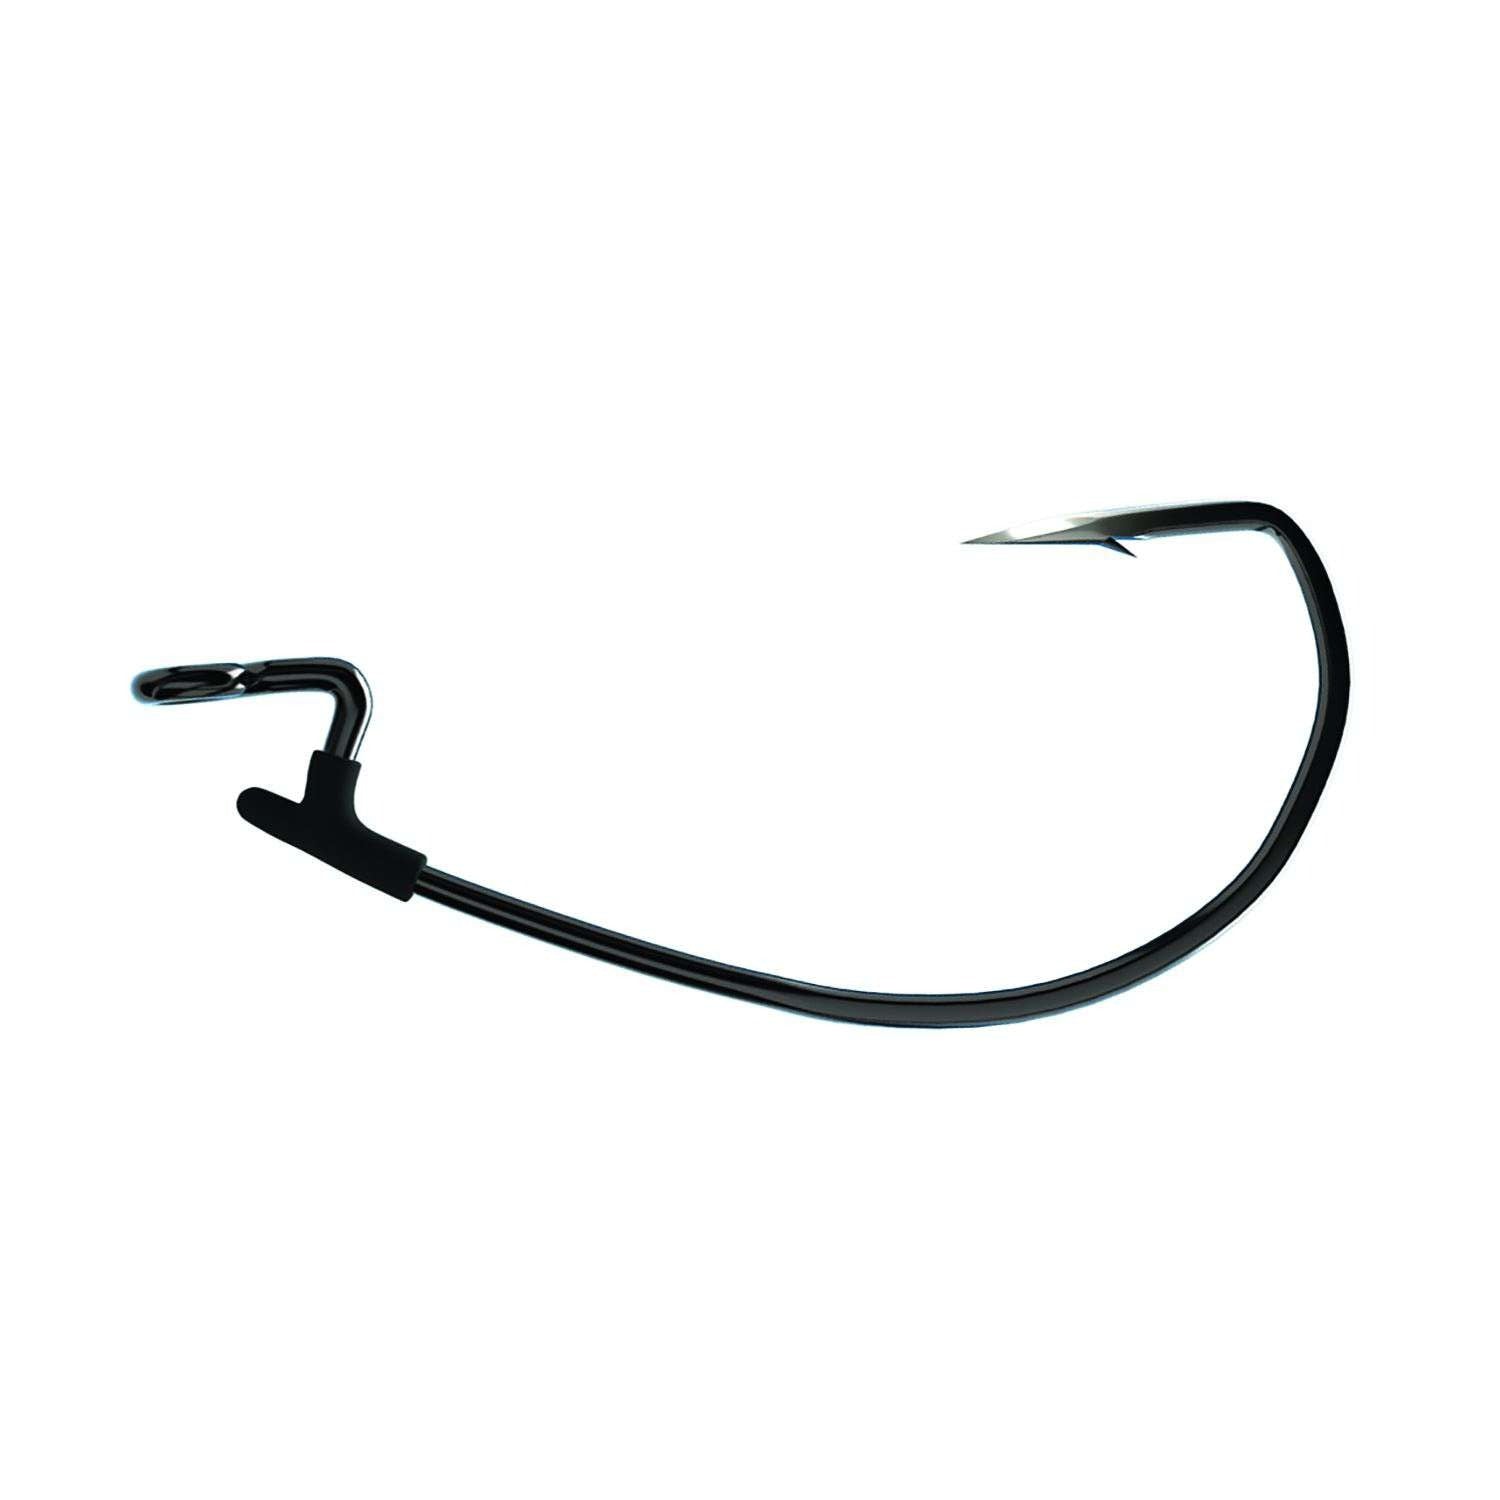 Trokar TK125 Magworm EWG Hook 3/0